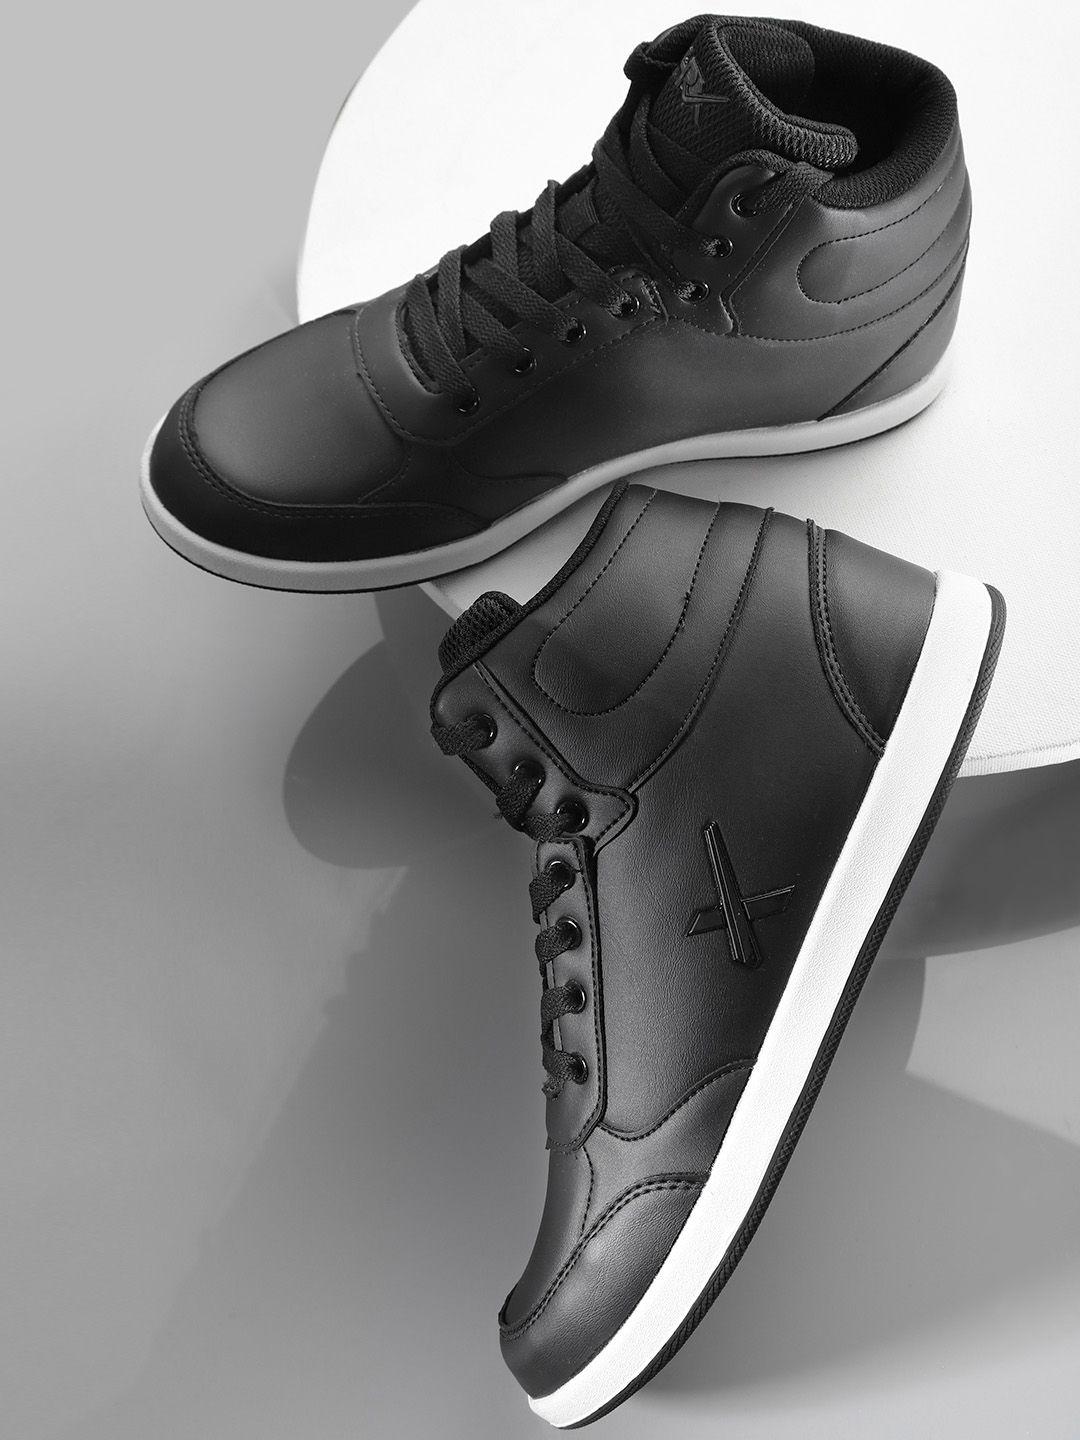 hrx-by-hrithik-roshan-black-solid-mid-top-skate-street-sneakers